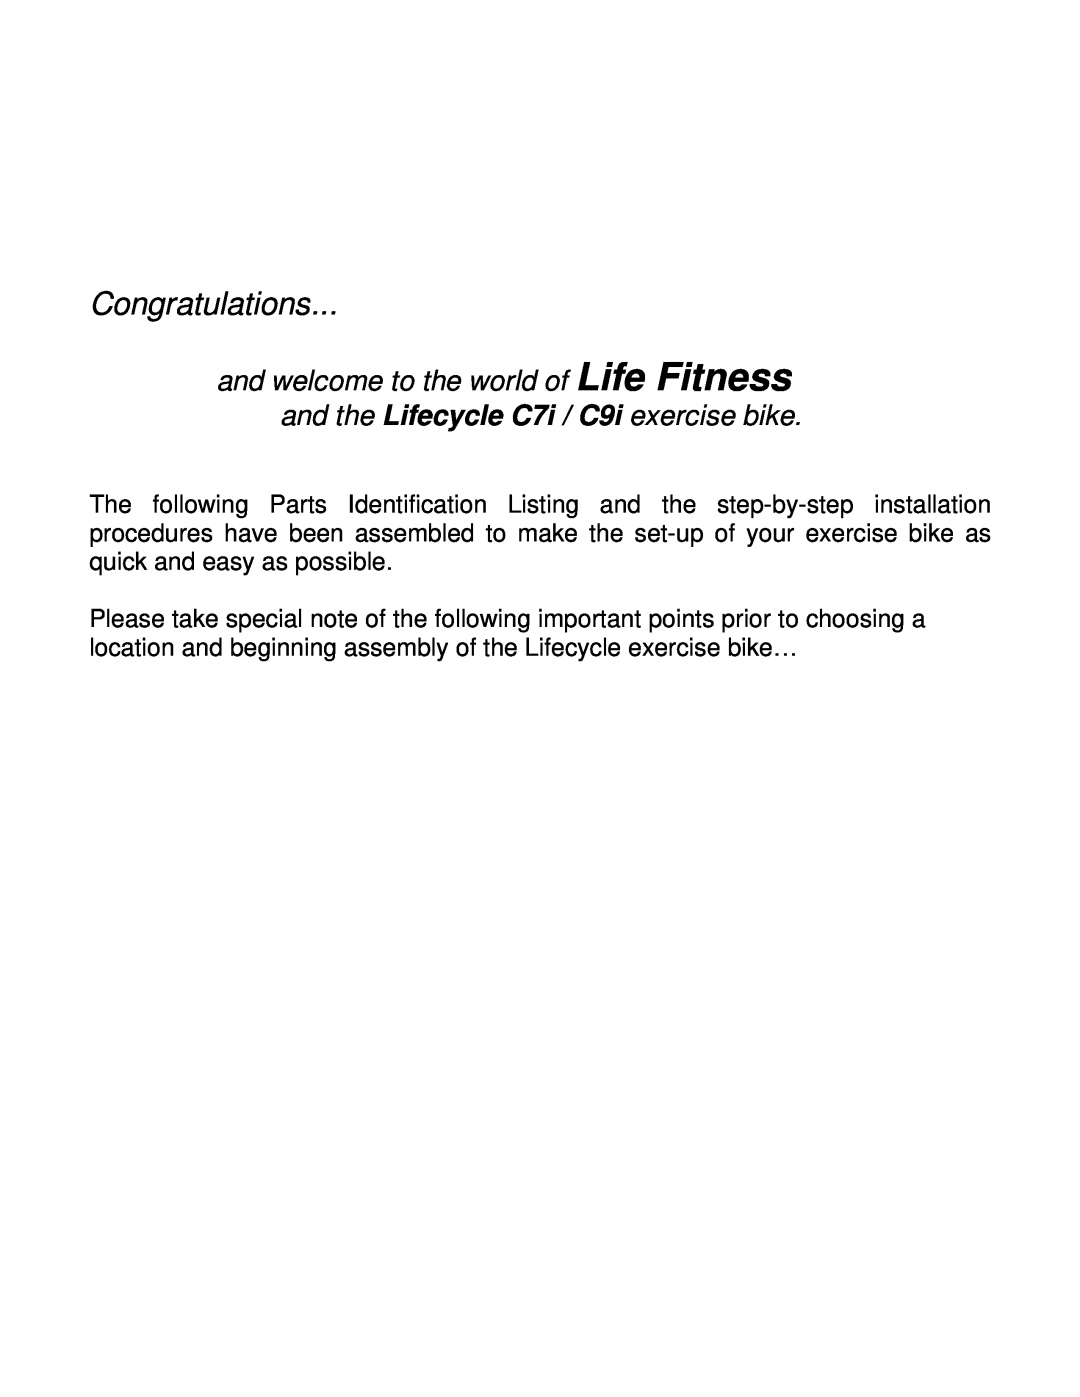 Life Fitness C7, C9 manual Congratulations 